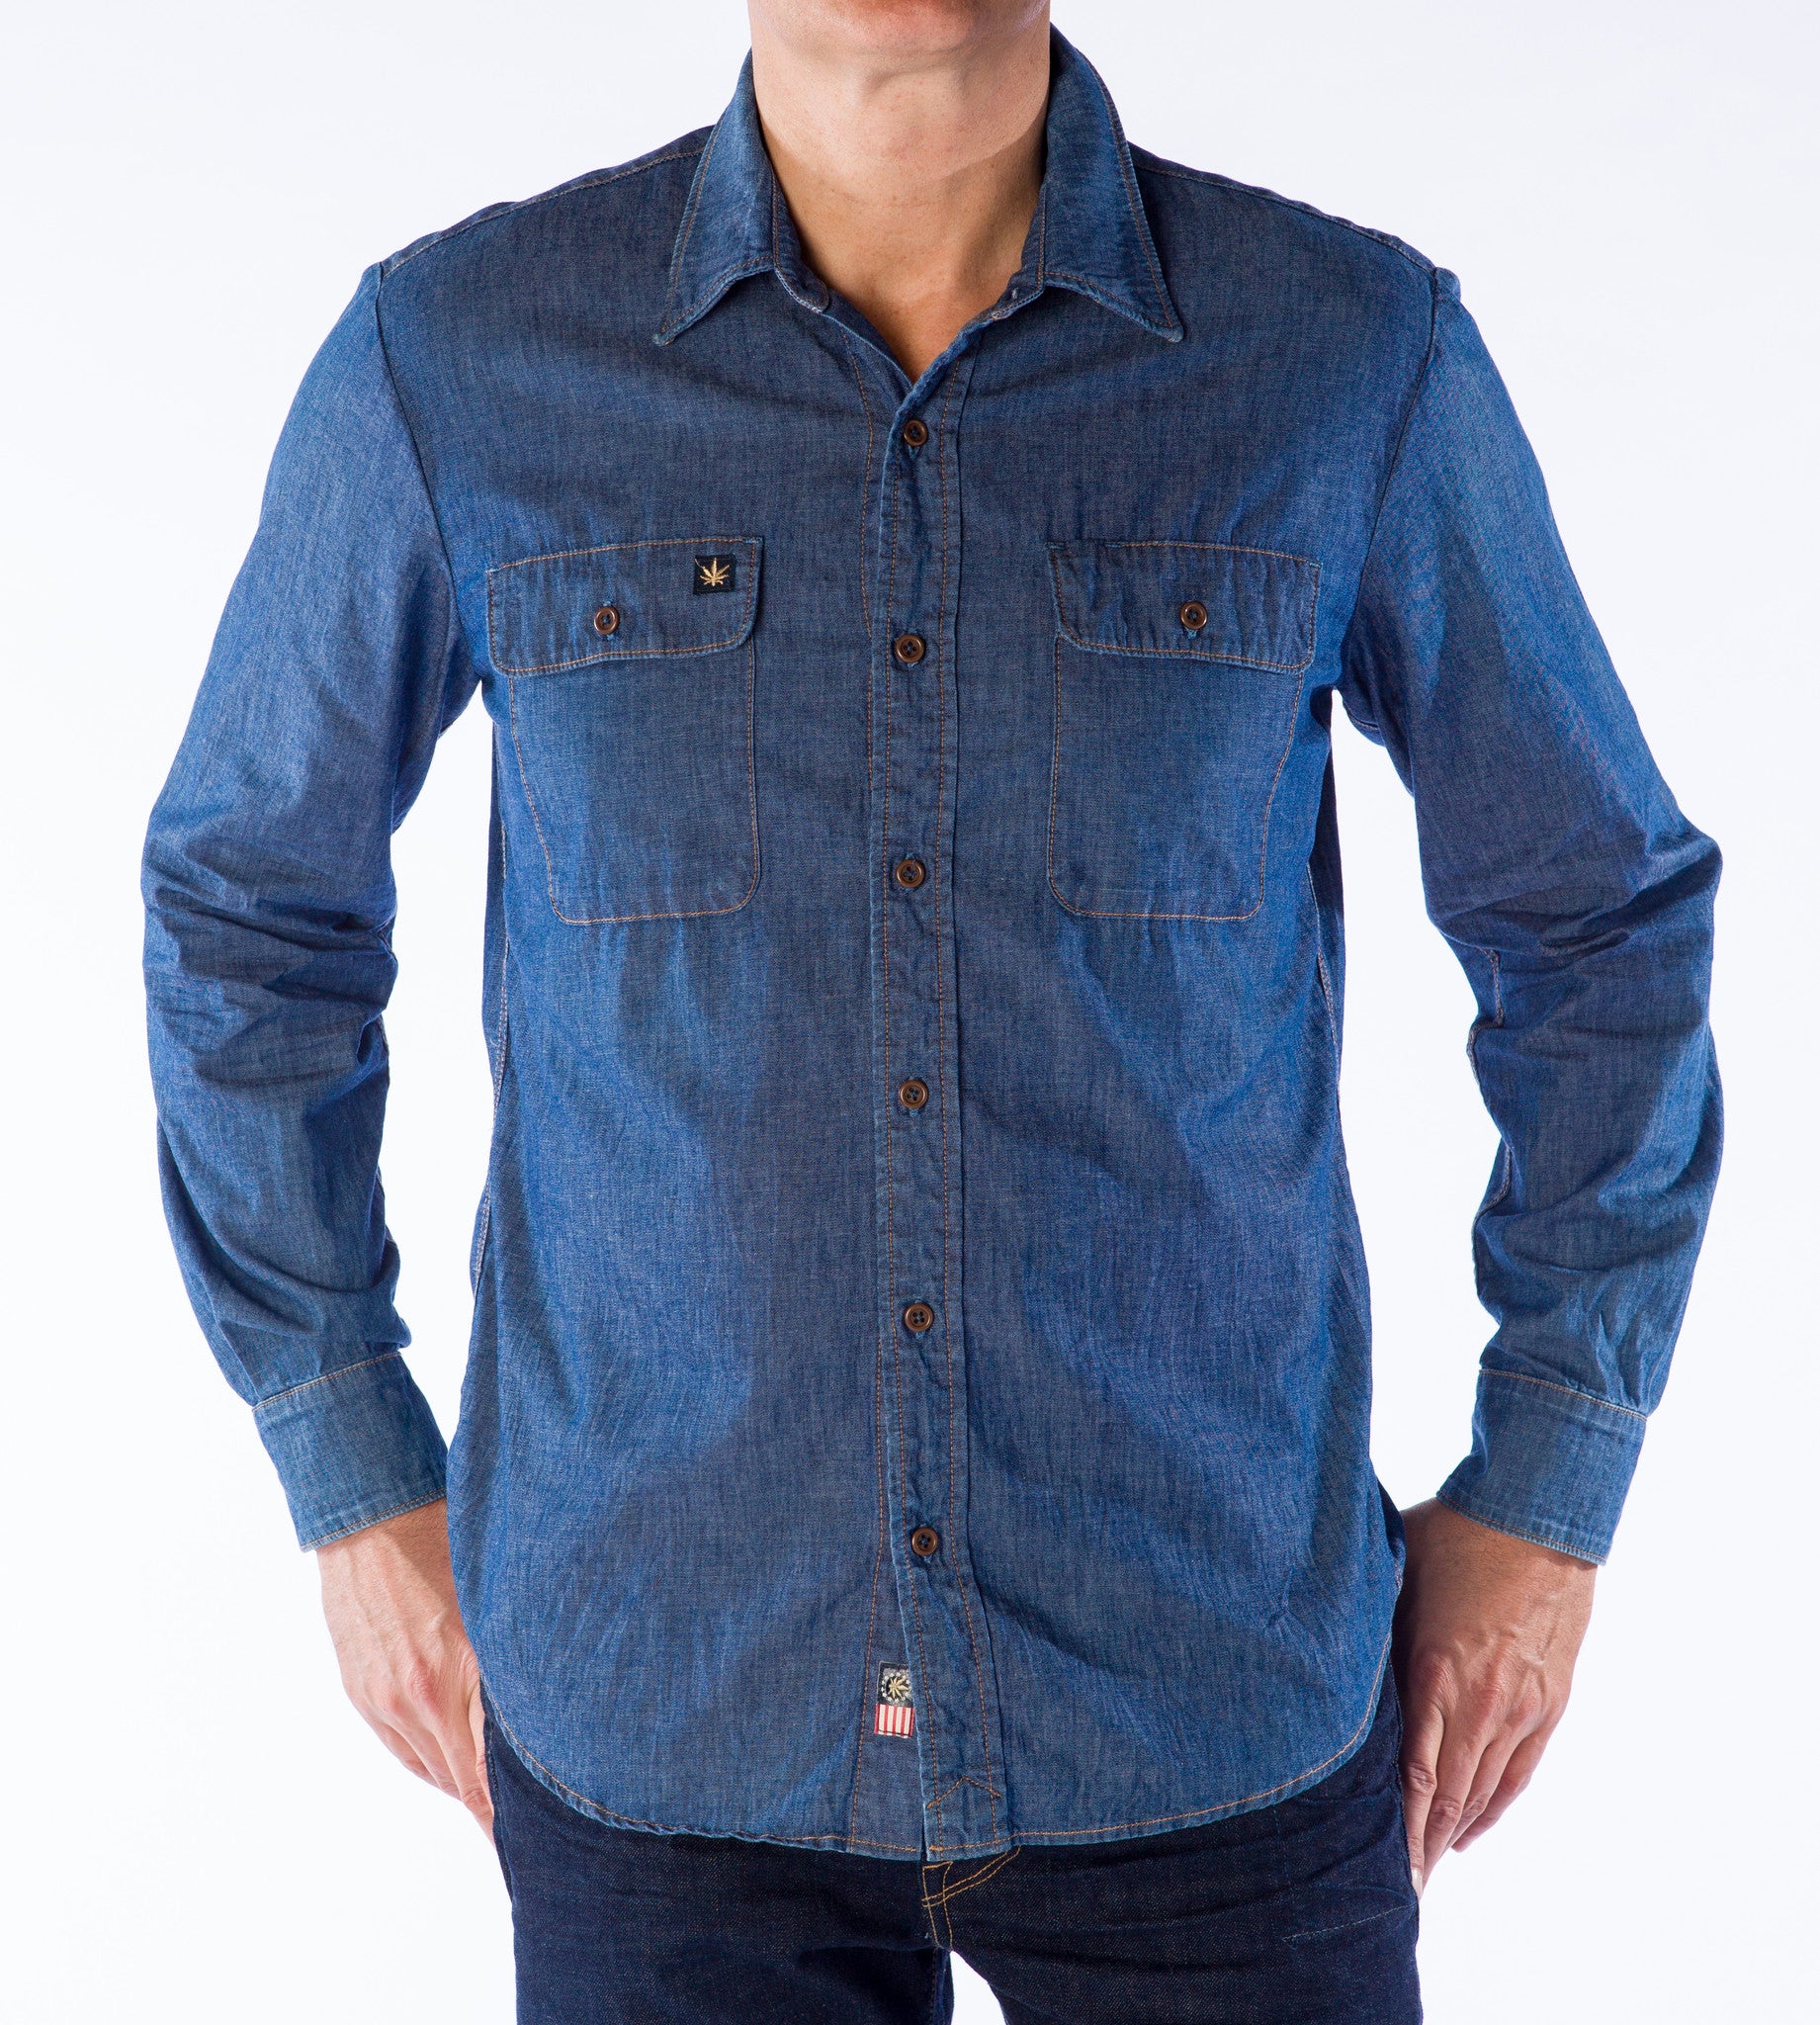 Buy Blue Denim Full Sleeves Shirt for Men